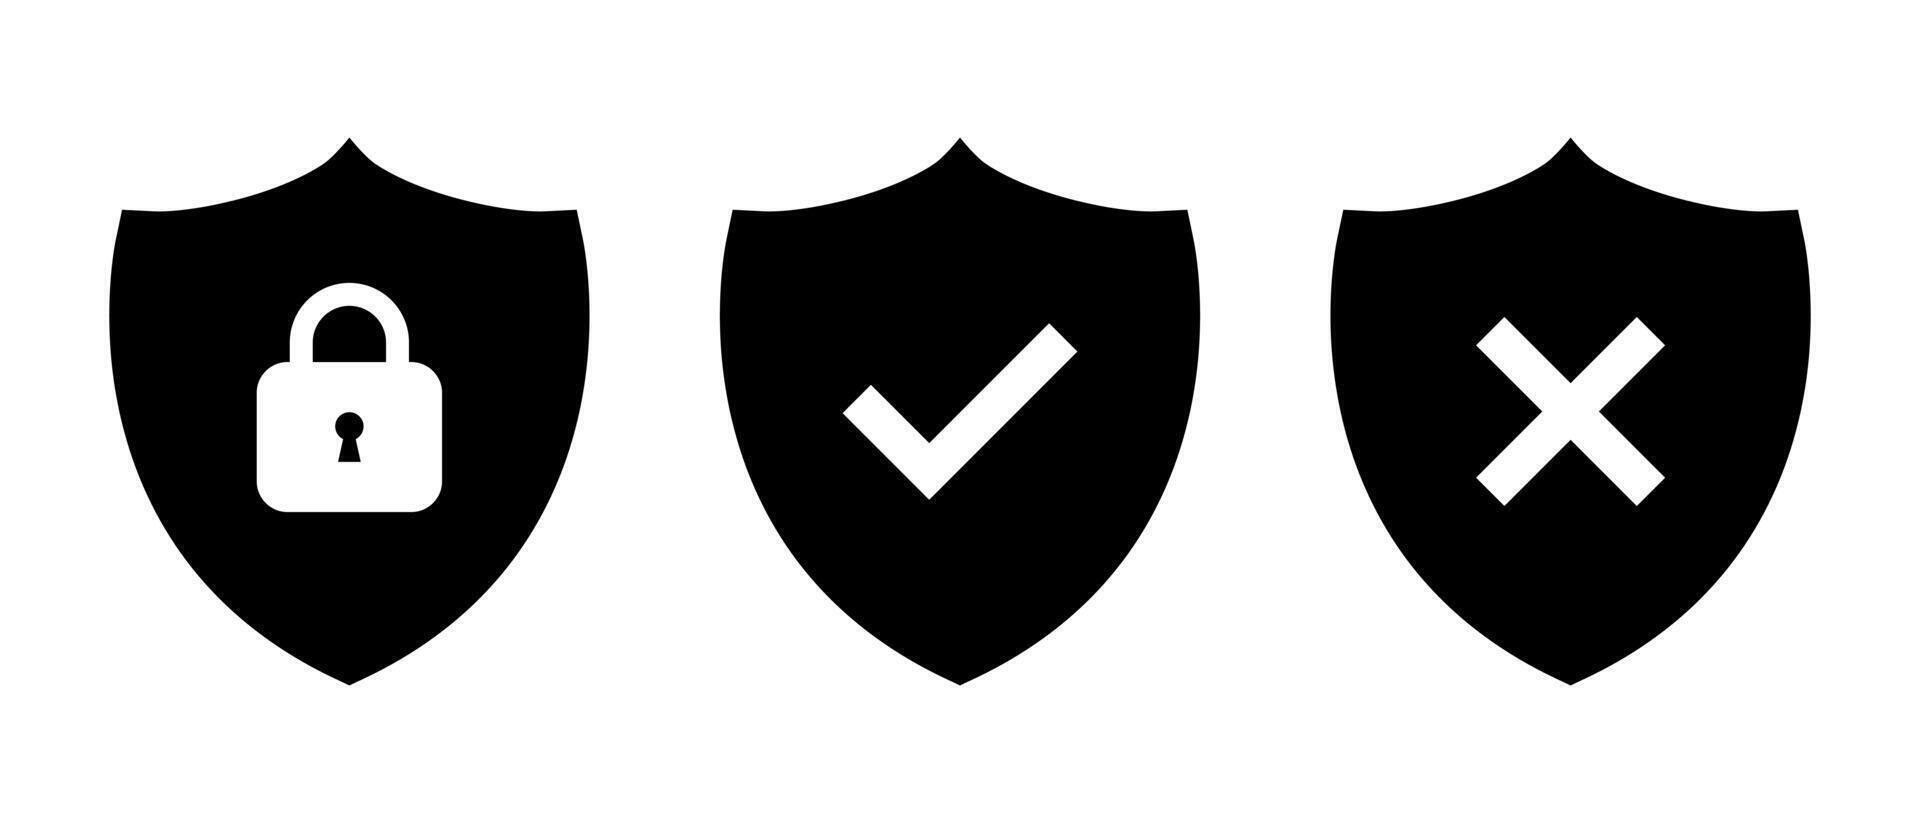 segurança escudo ícone vetor. escudos com cadeado, marca de seleção, e Cruz marca símbolo vetor